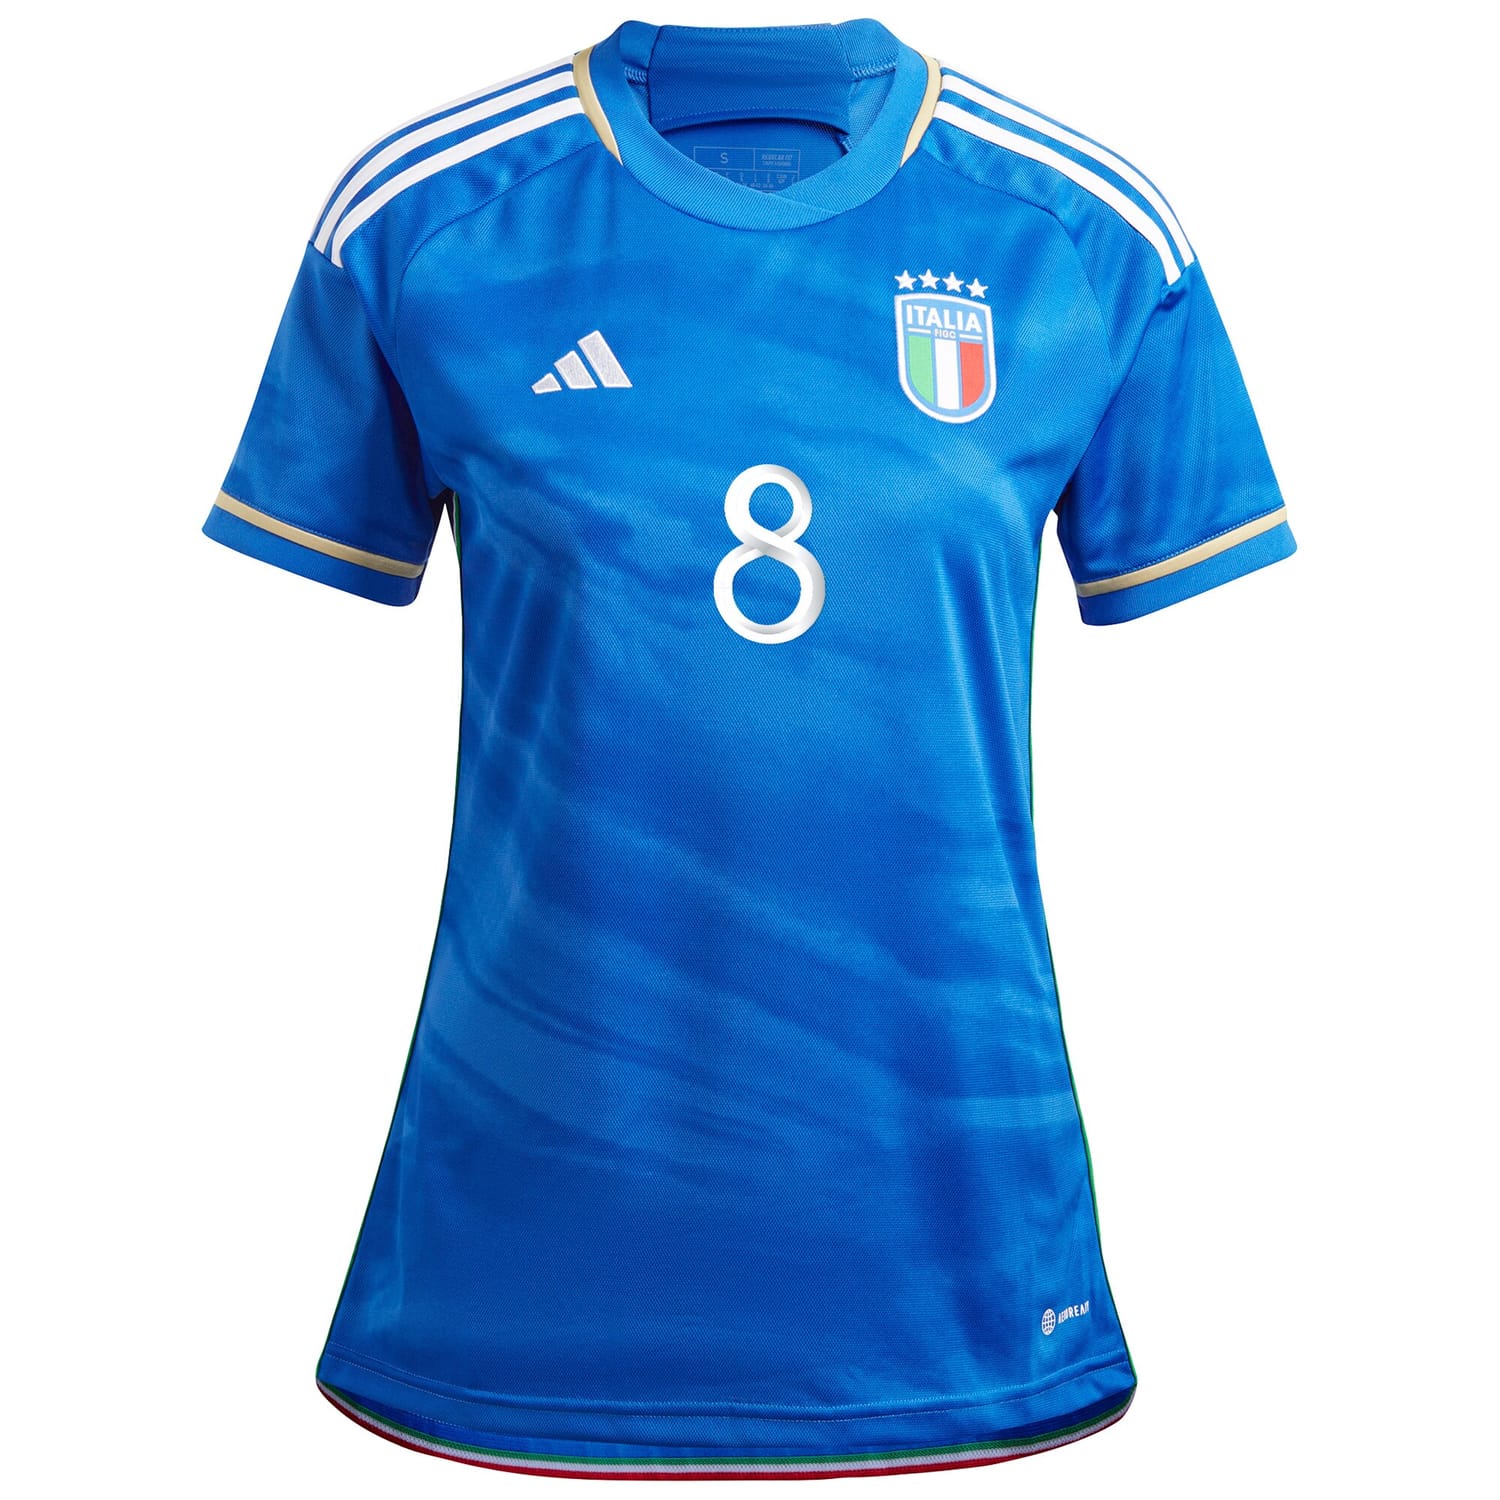 Italy National Team Home Jersey Shirt Blue 2023-24 player Jorginho printing for Women